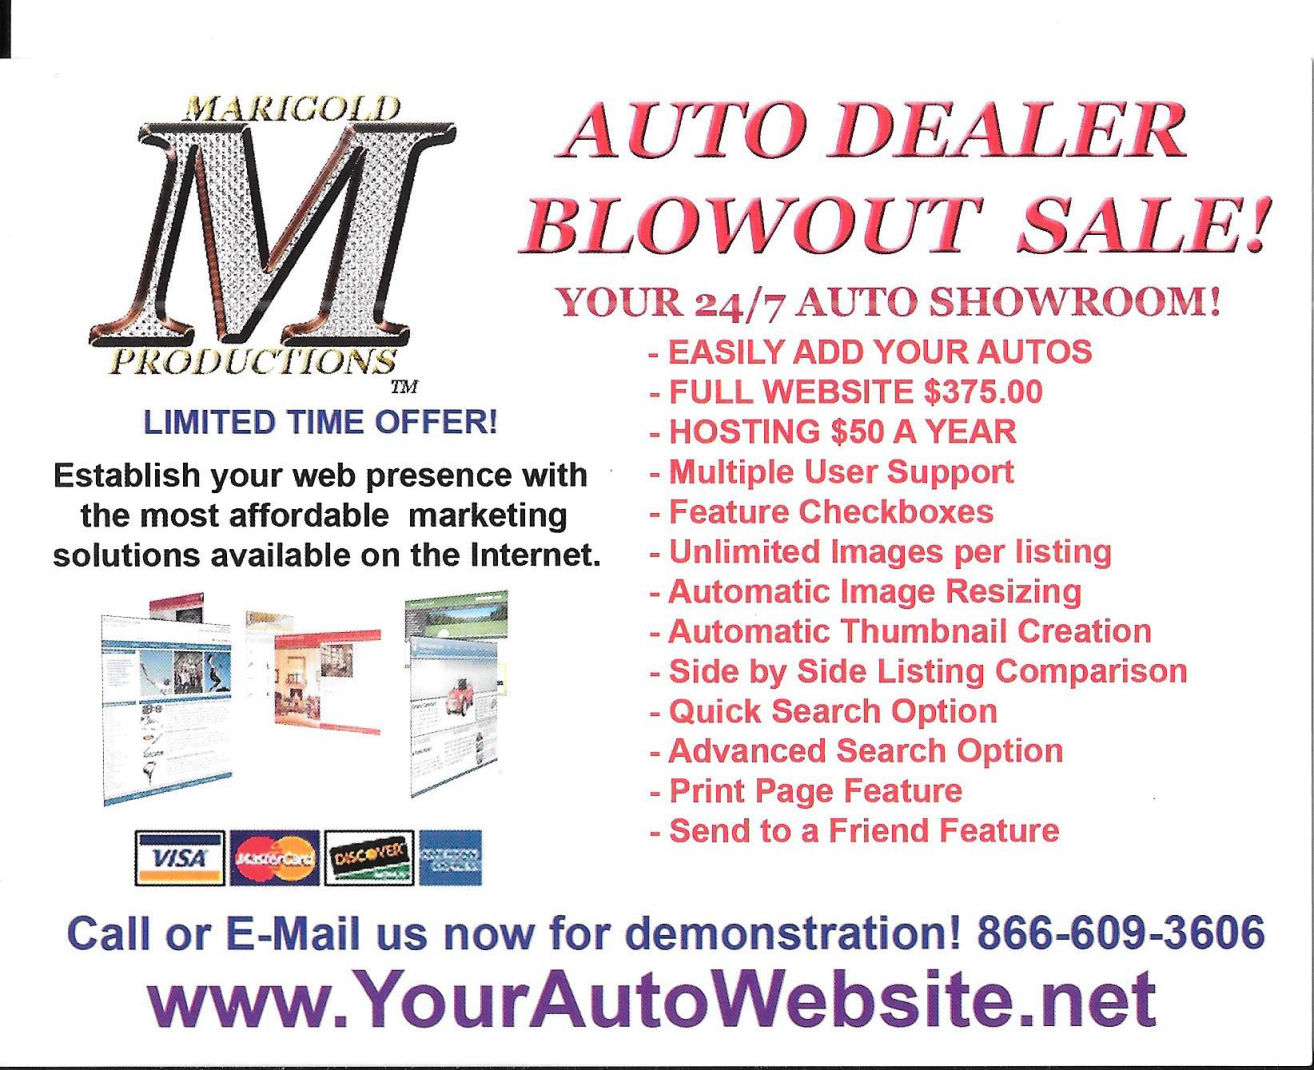 Get Your Auto Website